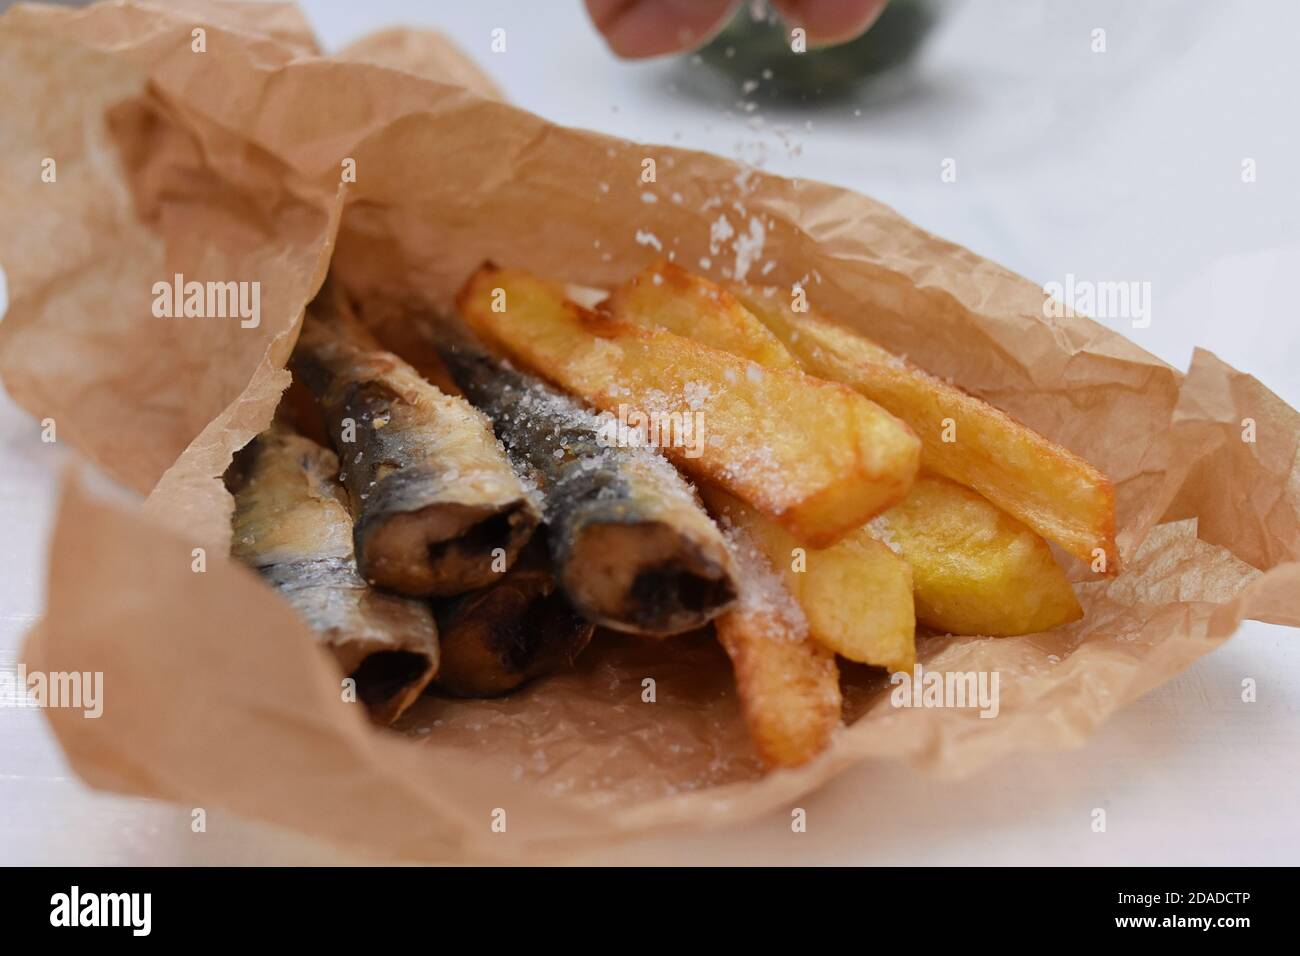 Carta Fata wrapped sea food Stock Photo - Alamy